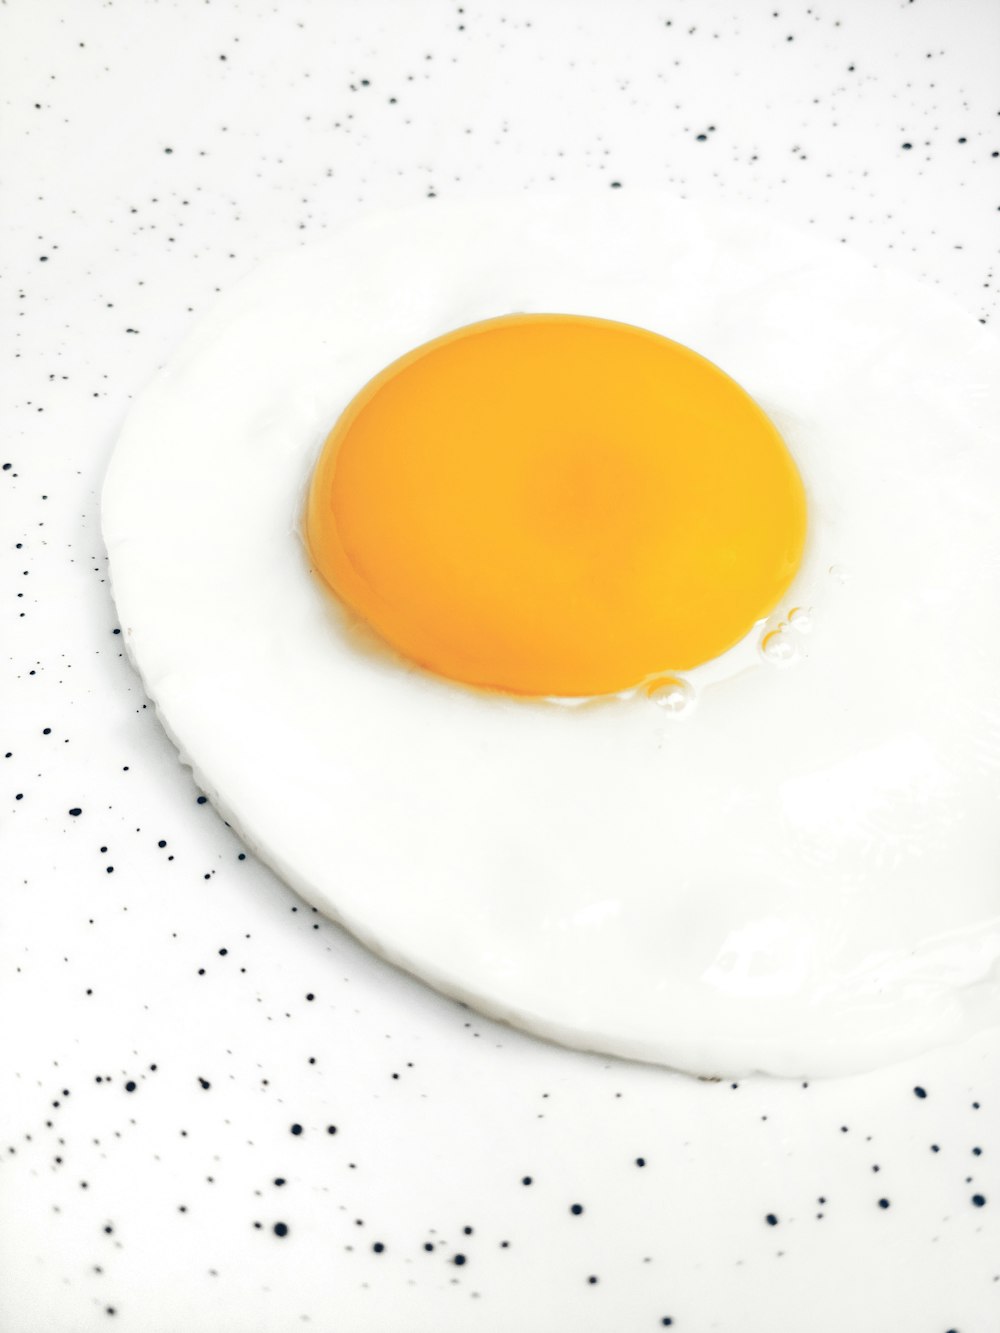 sunny side-up egg illustration